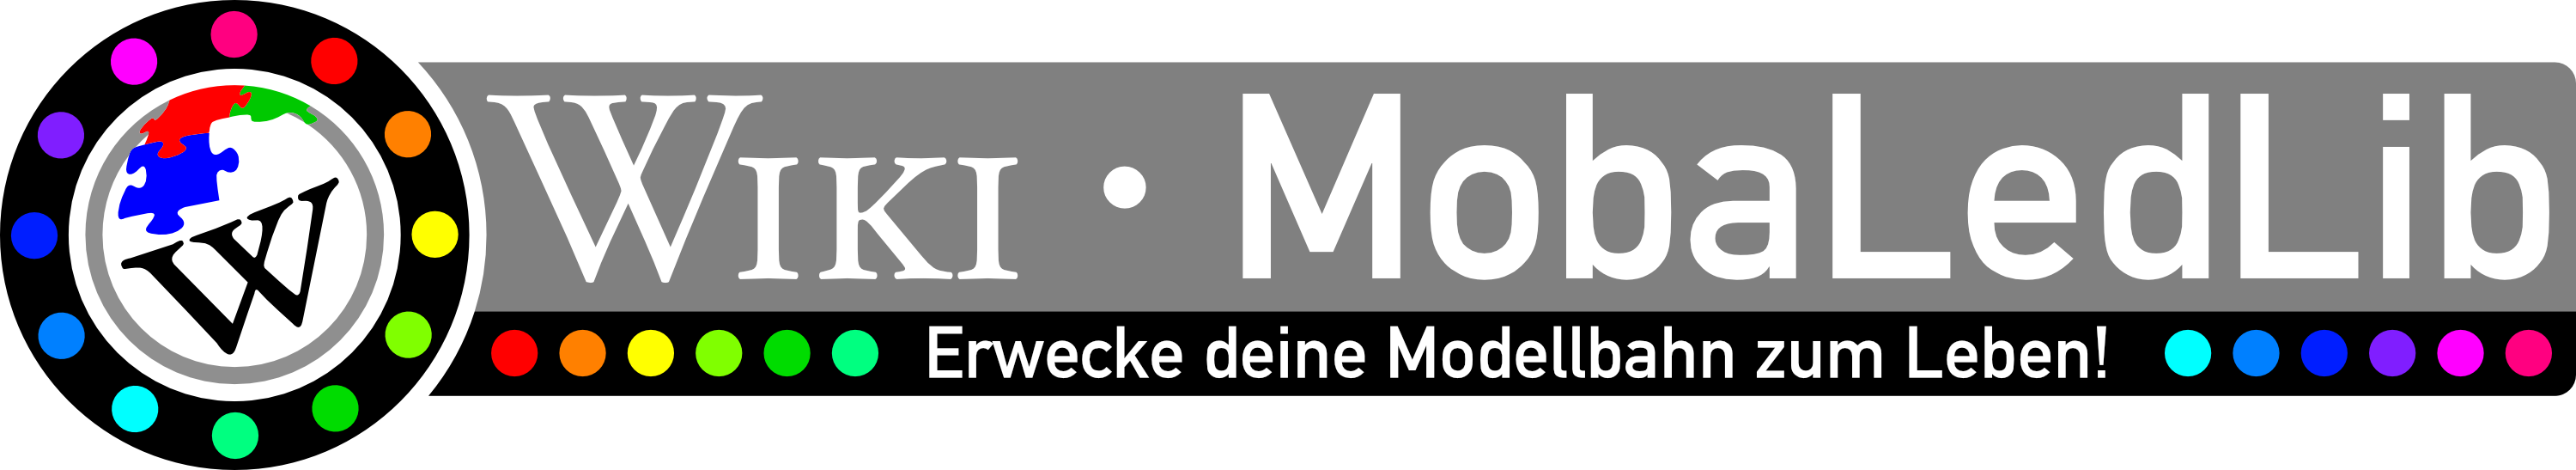 Logo MobaLedLib Wiki